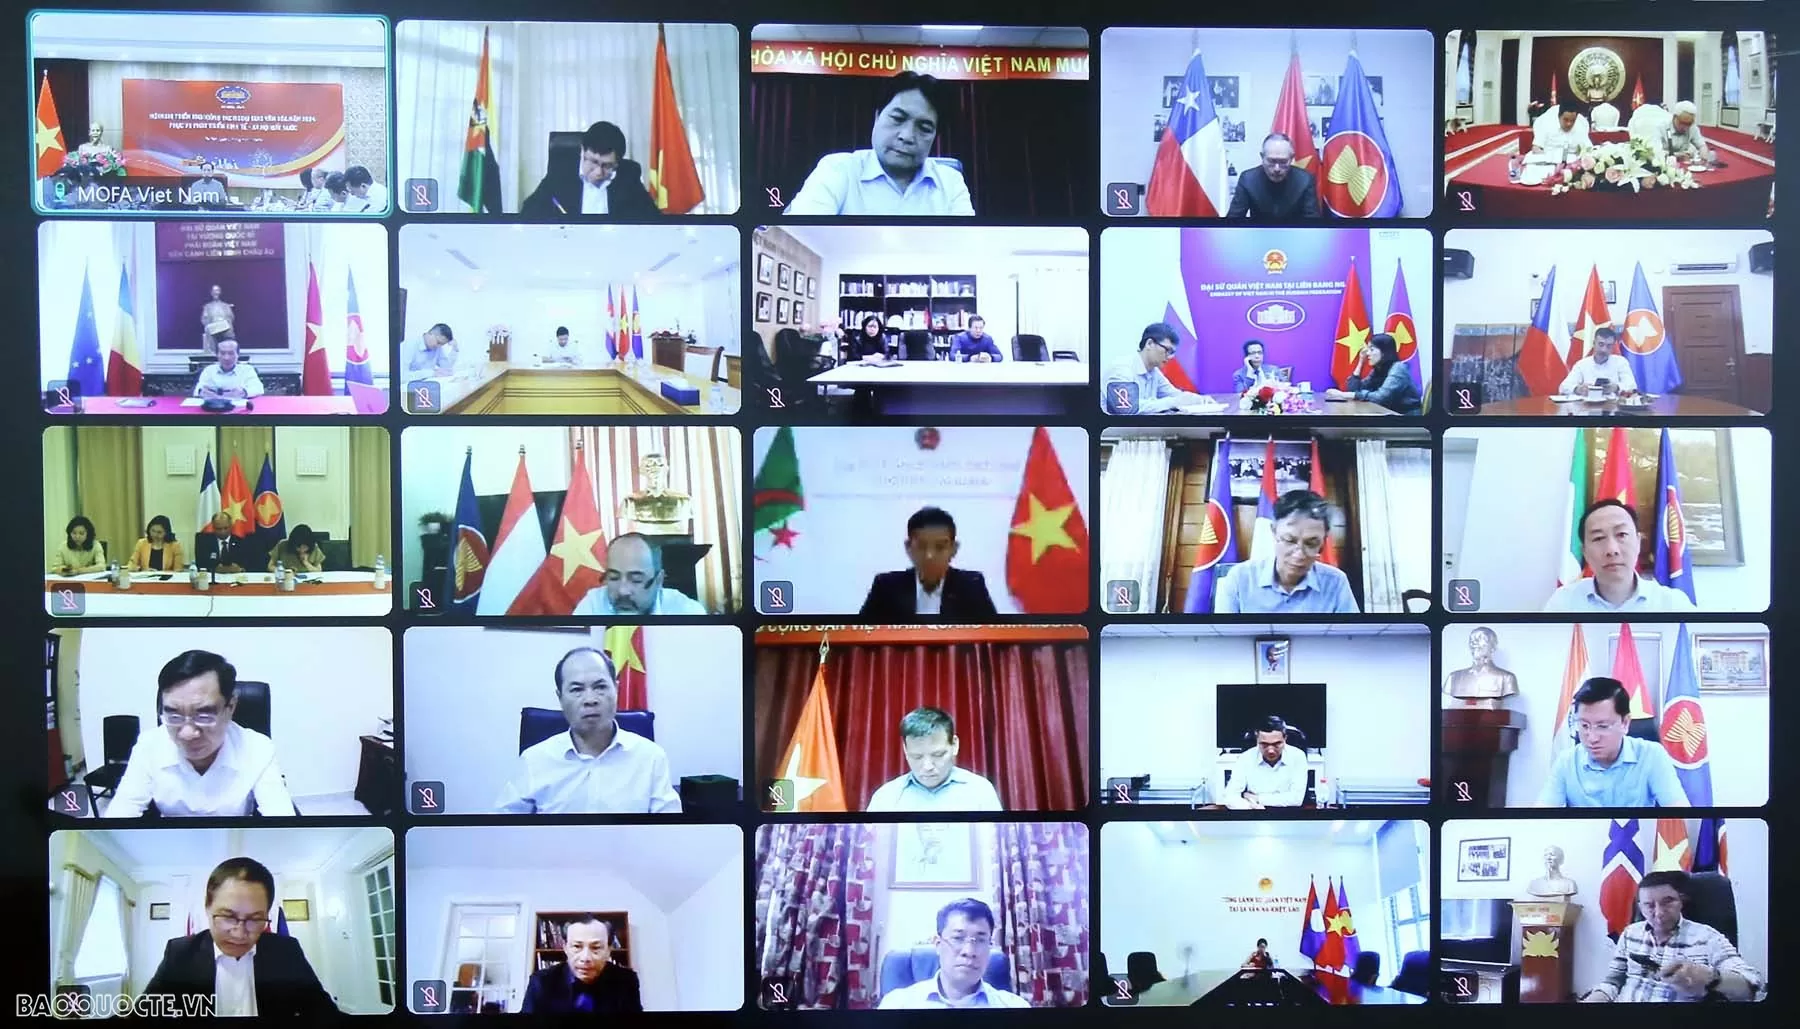 Đại sứ, Trưởng Cơ quan đại diện Việt Nam ở nước ngoài tham dự Hội nghị trực tuyến.